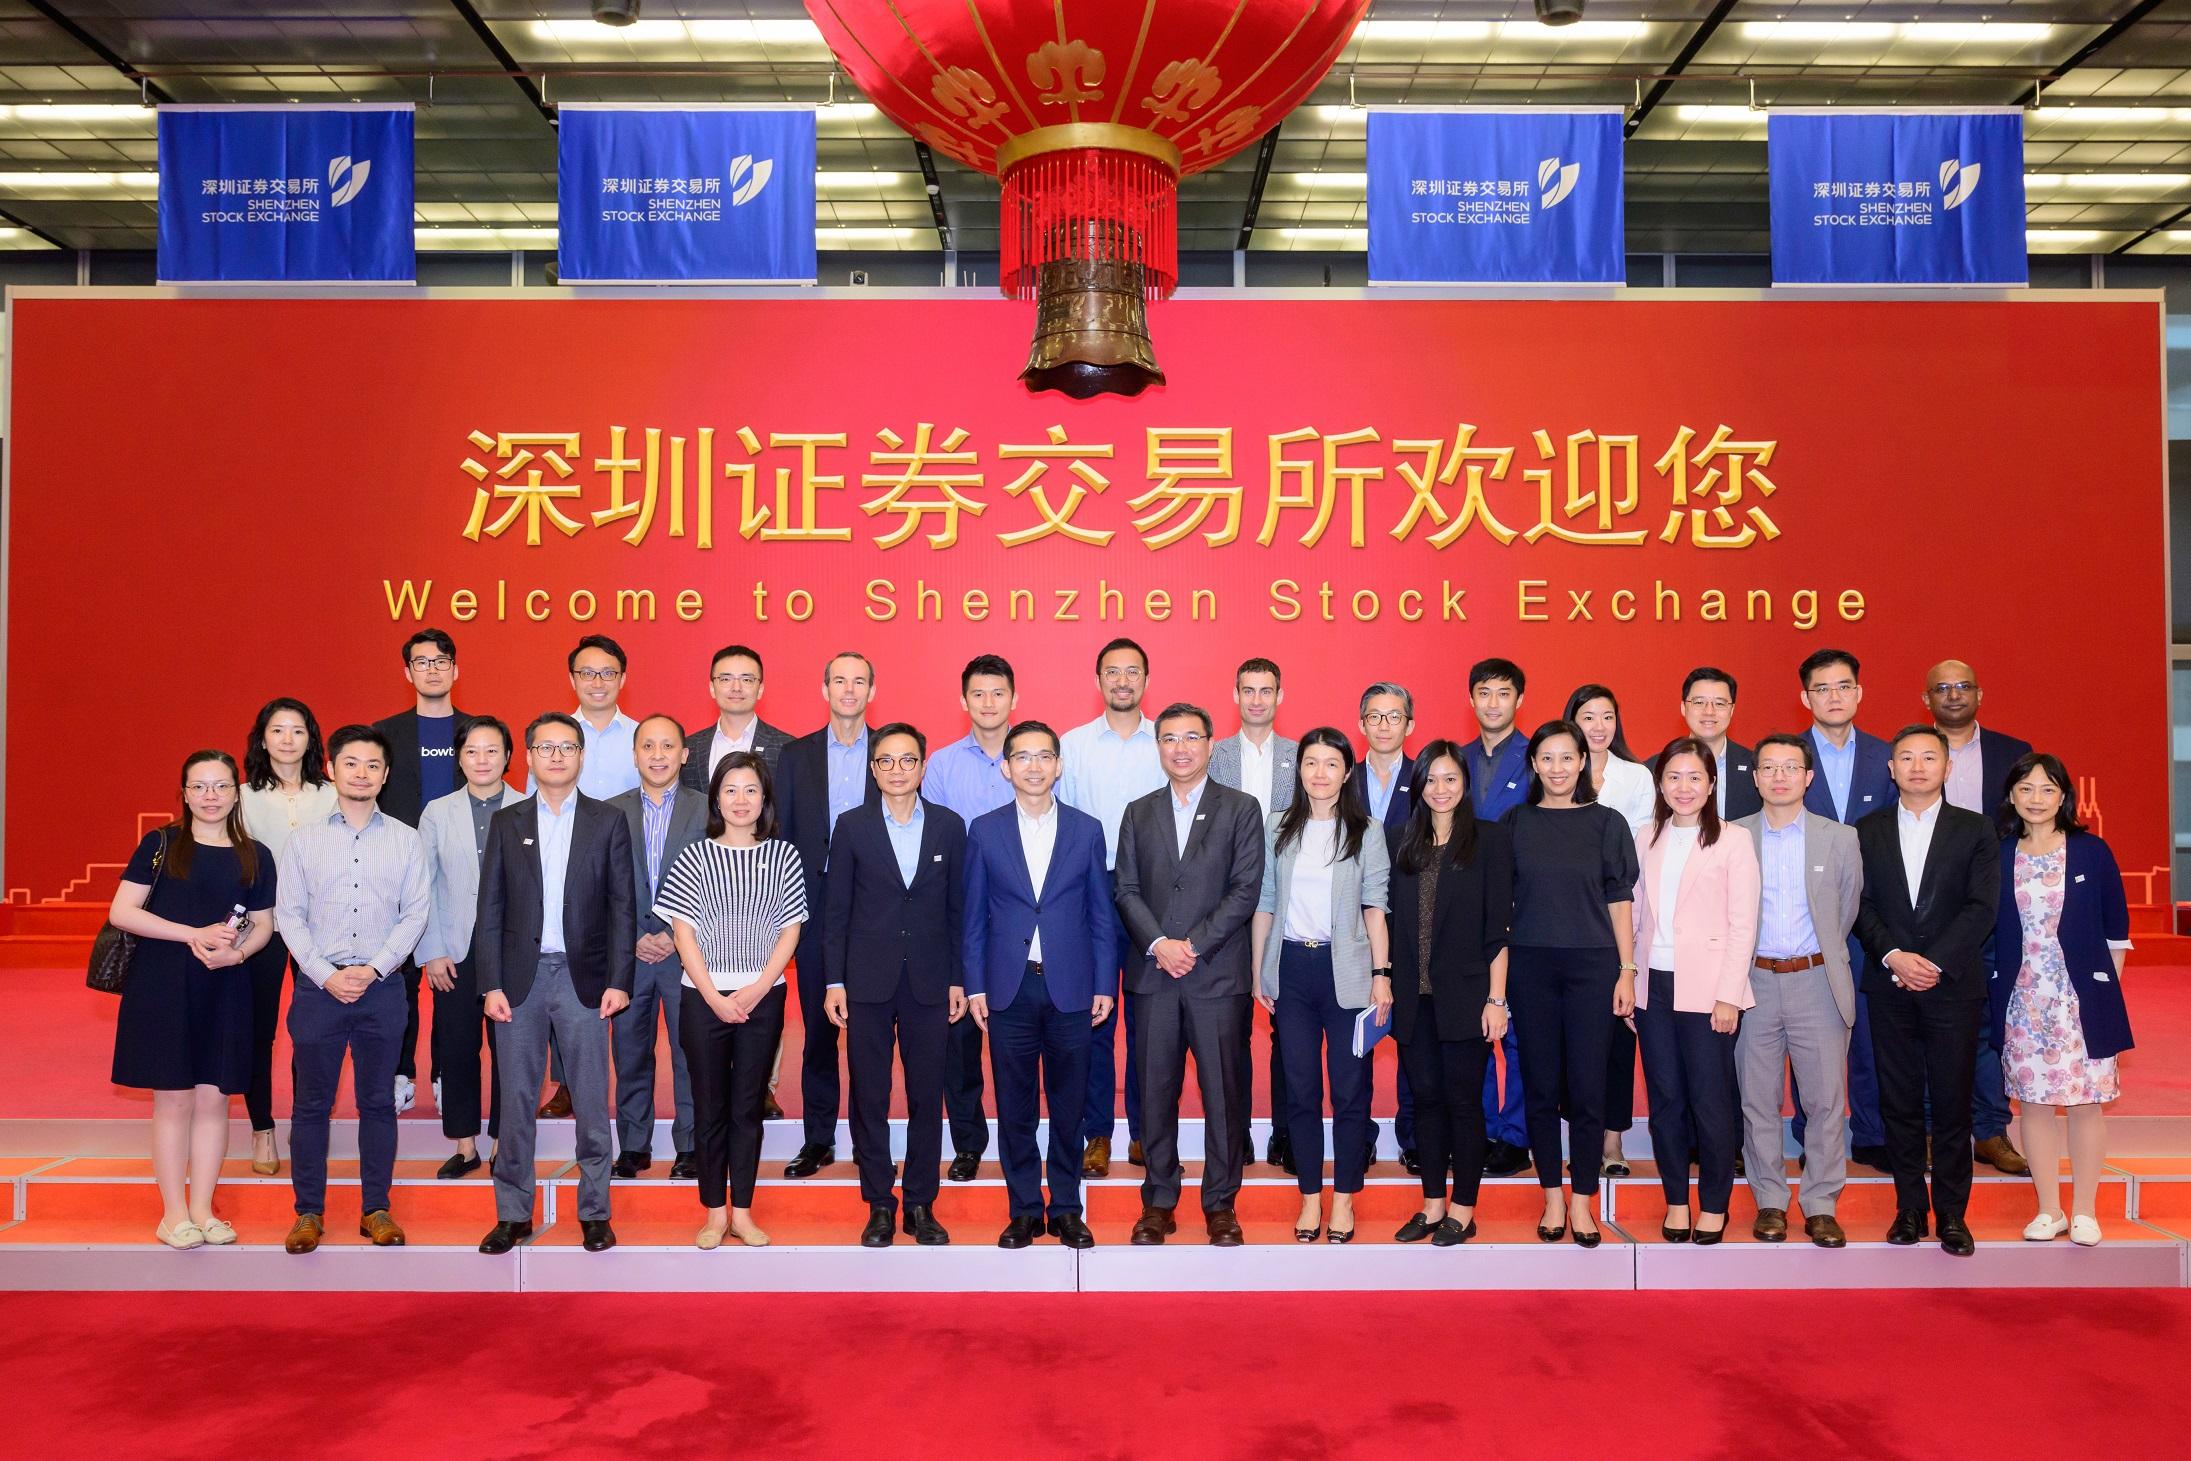 金融學院金融領袖計劃 （計劃）的學員代表於九月二十四日至二十七日完成了計劃首次深圳交流團活動。計劃學員參觀了深圳證券交易所。